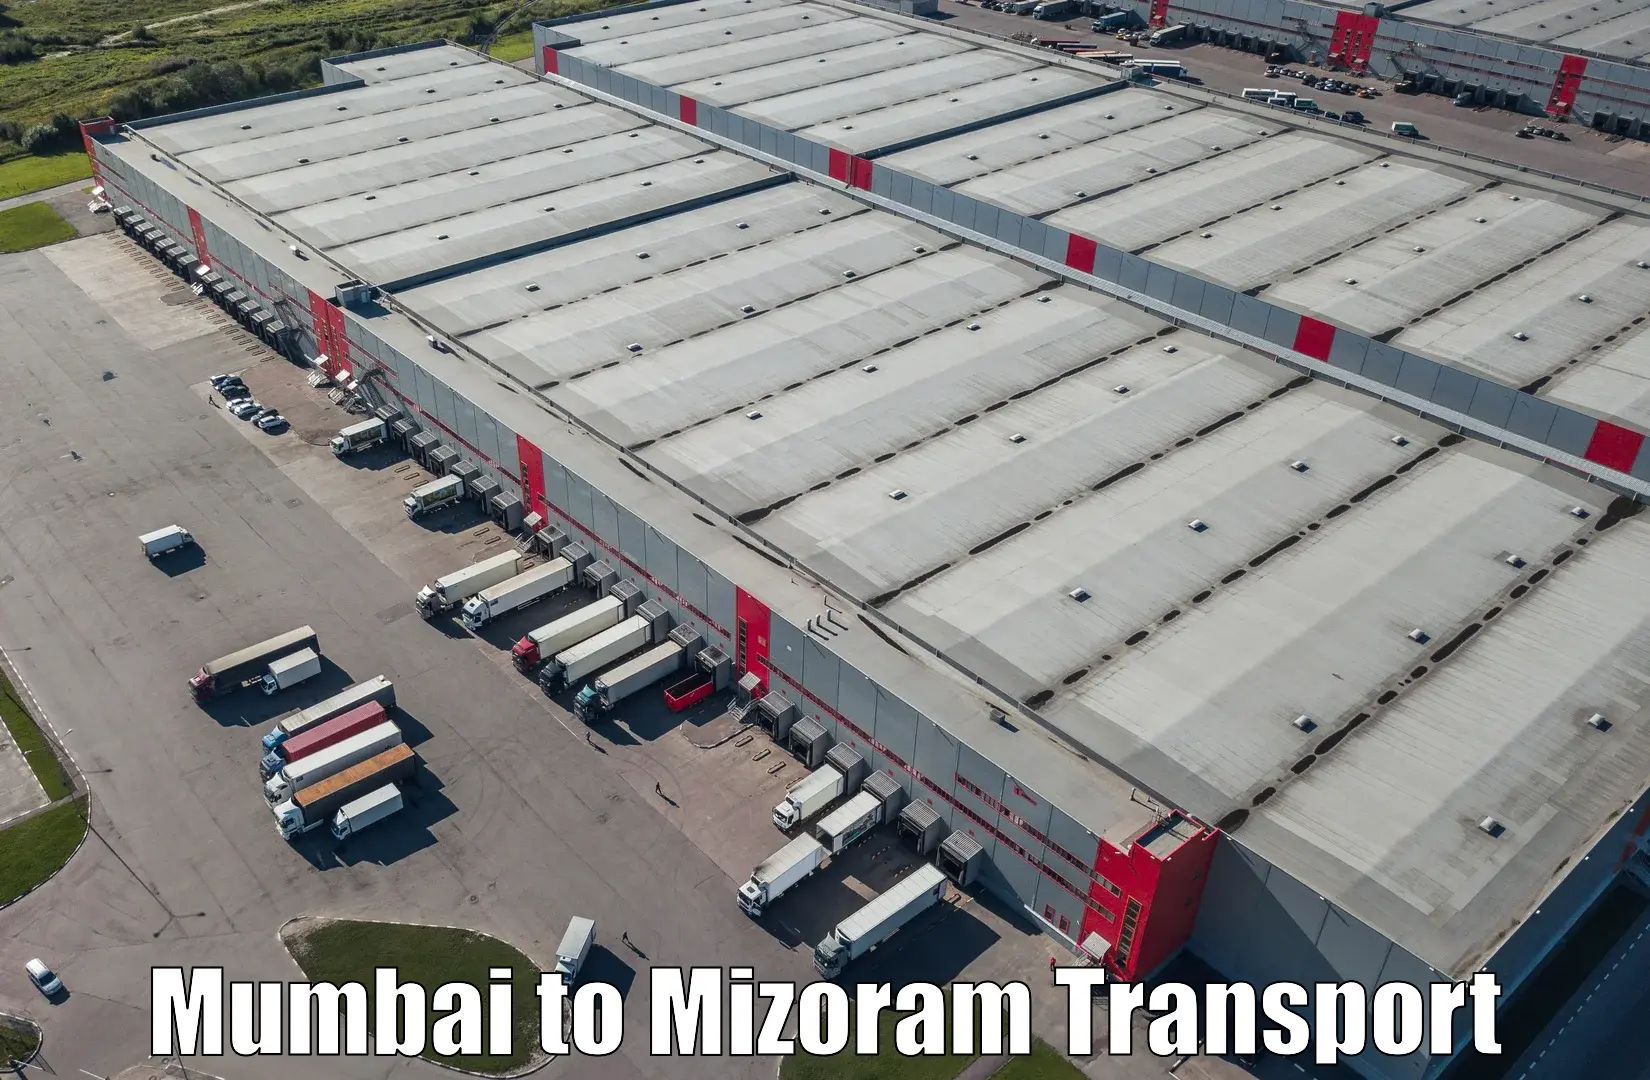 Furniture transport service Mumbai to Siaha